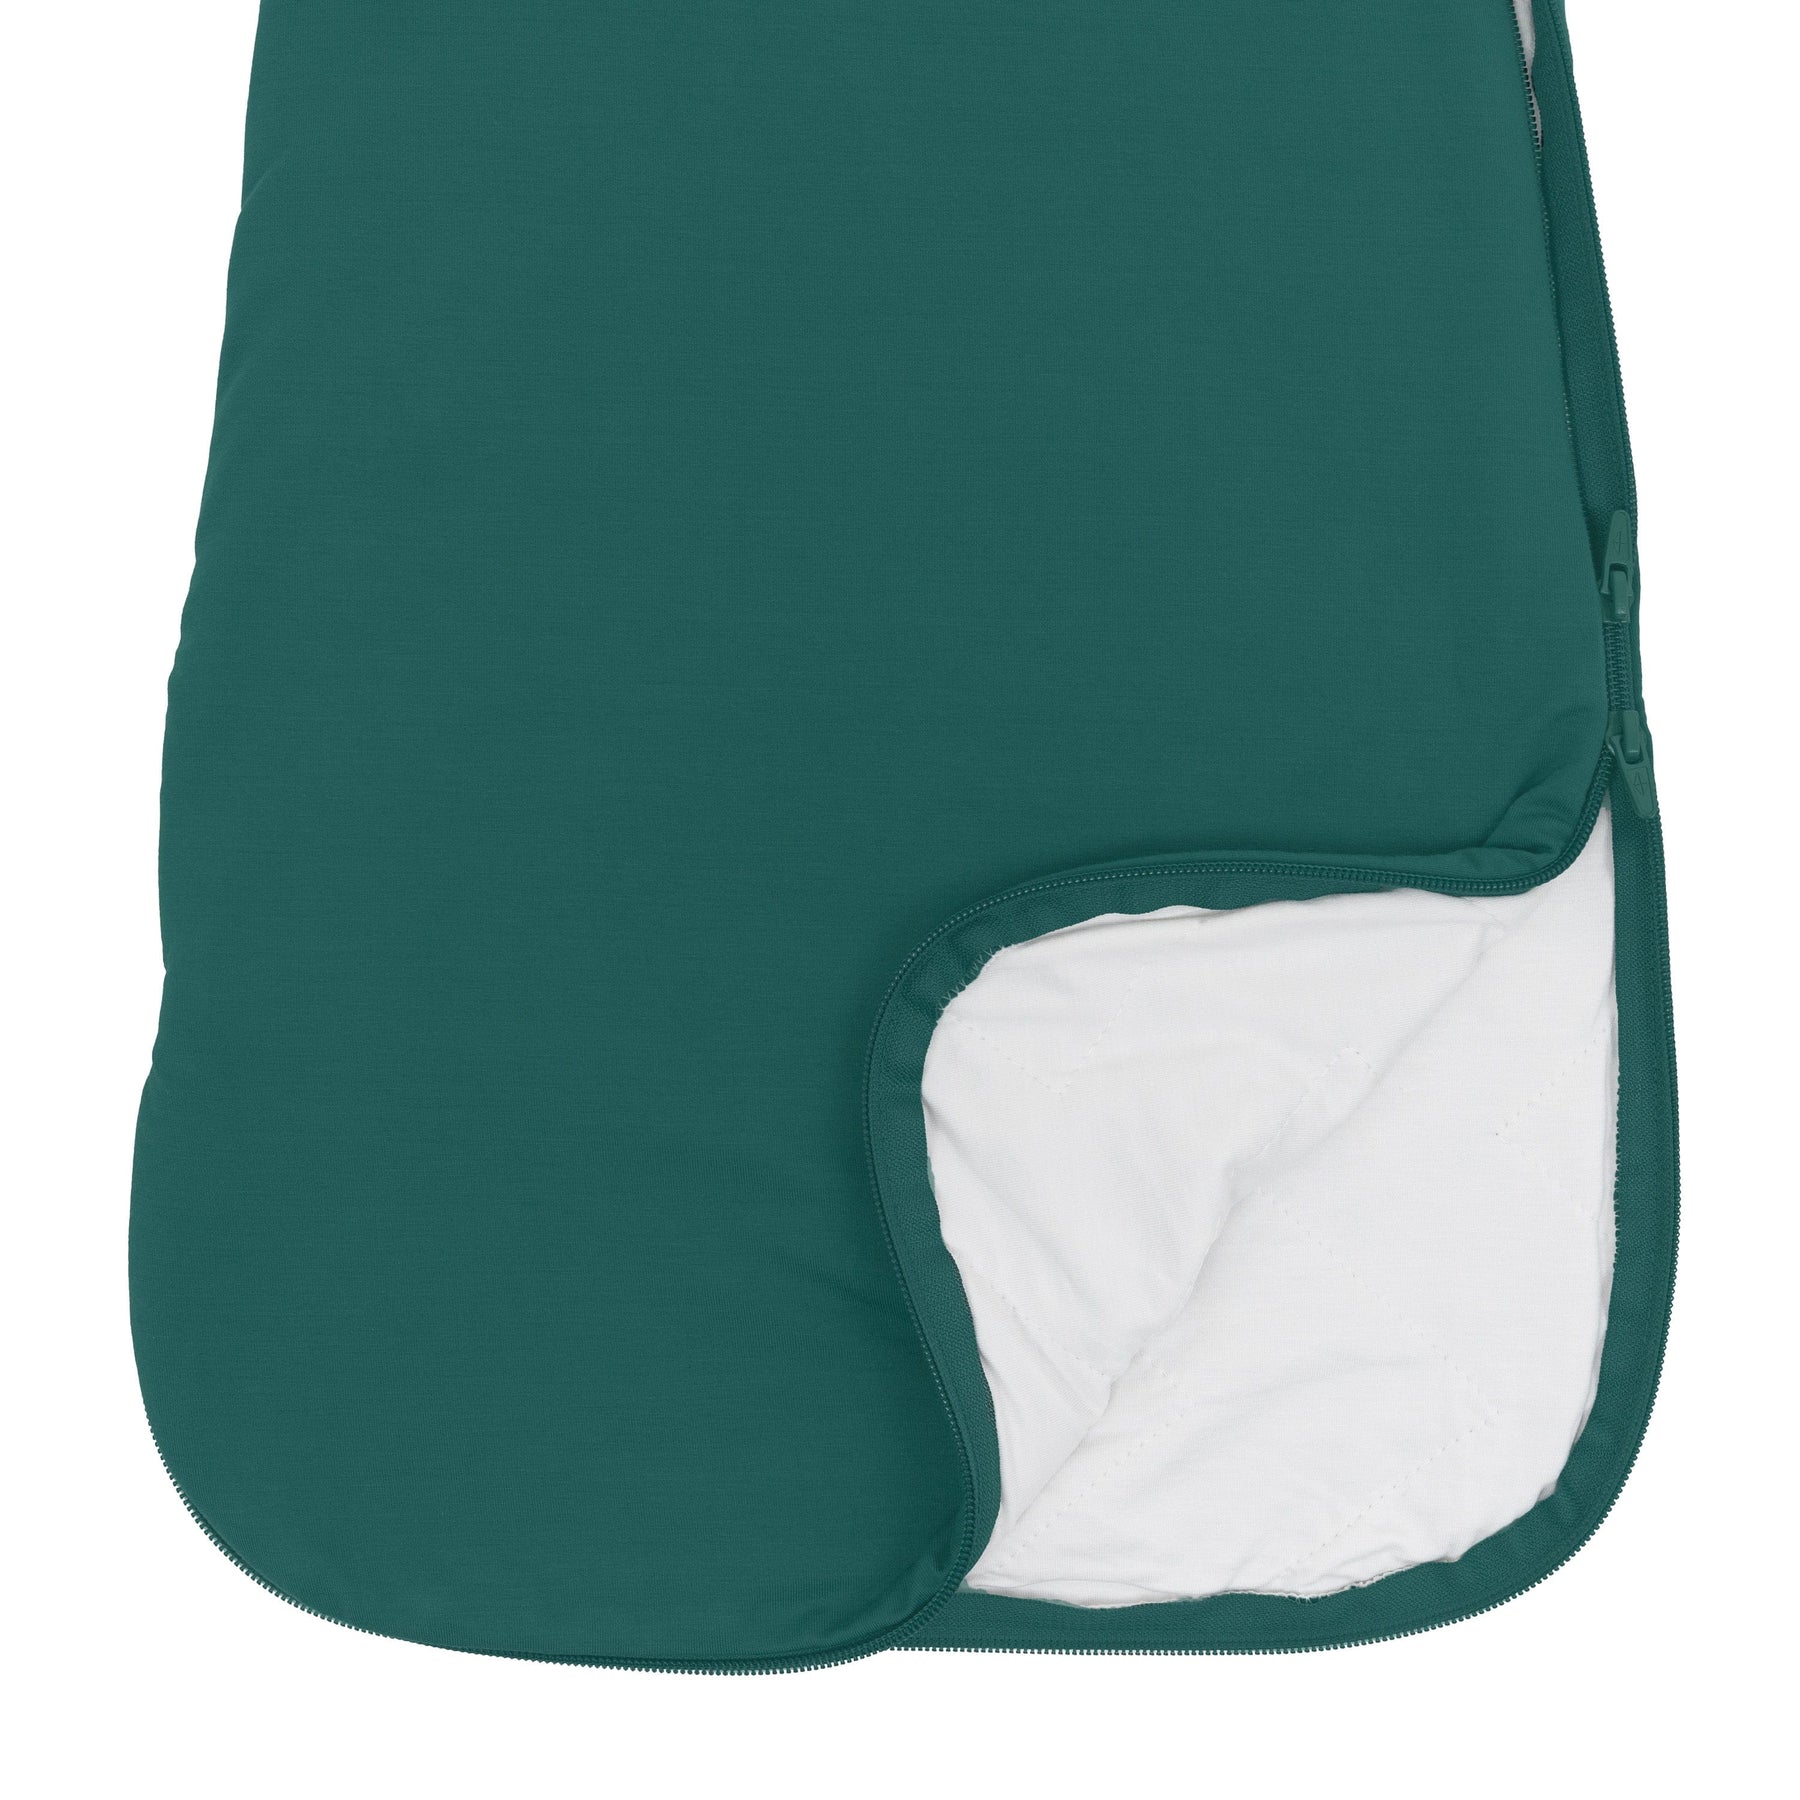 Kyte Baby bamboo Sleep Bag in Emerald 1.0 double zipper